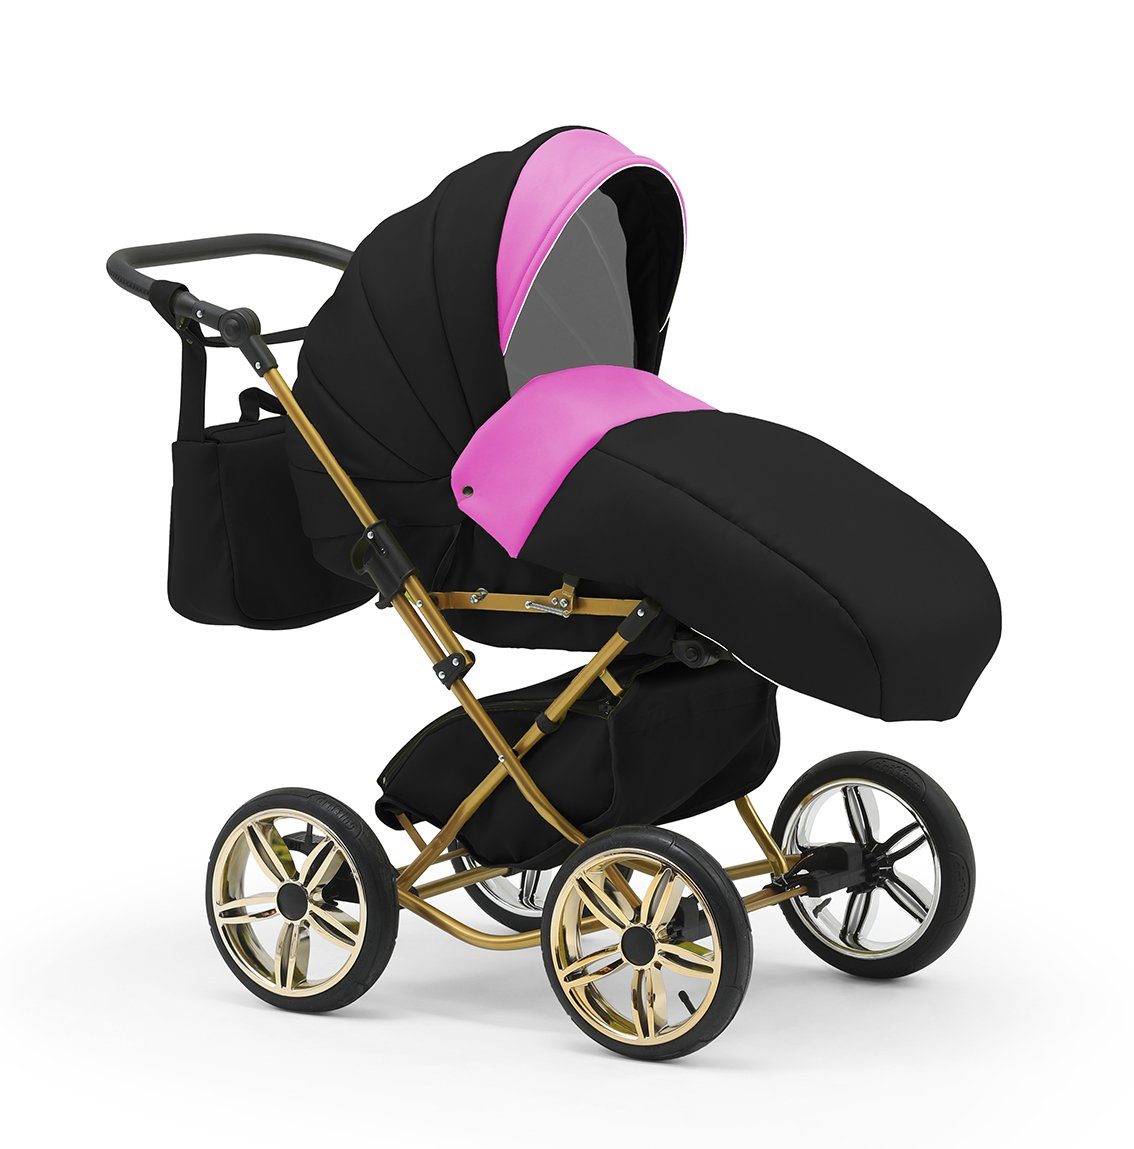 Sorento in Designs - Autositz inkl. Pink-Schwarz babies-on-wheels in - 13 3 10 Teile 1 Kombi-Kinderwagen